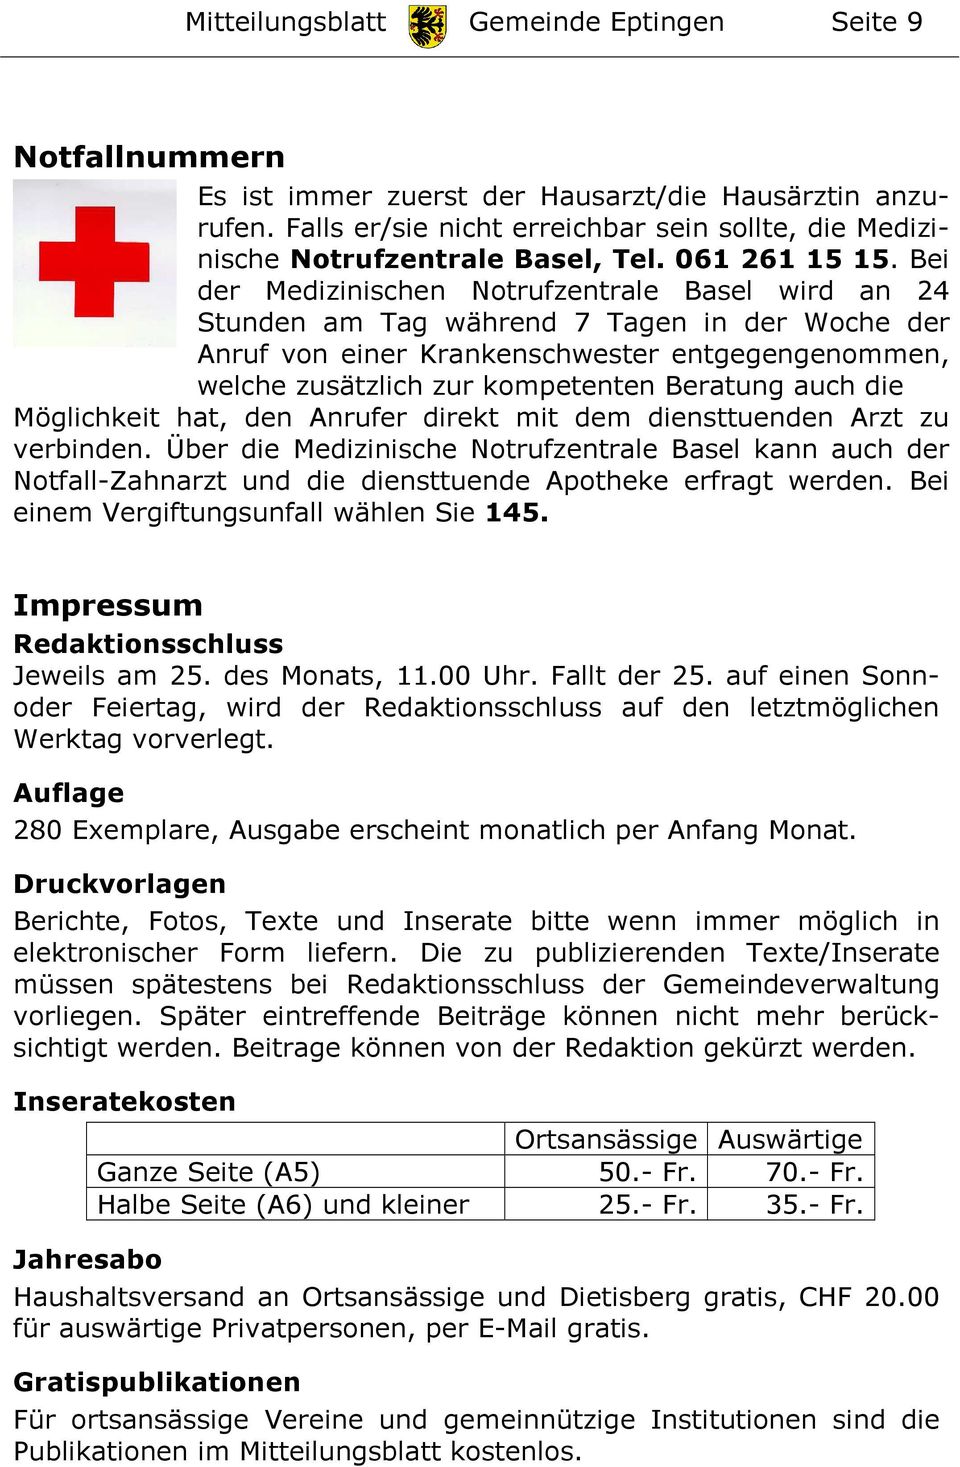 Bei der Medizinischen Notrufzentrale Basel wird an 24 Stunden am Tag während 7 Tagen in der Woche der Anruf von einer Krankenschwester entgegengenommen, welche zusätzlich zur kompetenten Beratung